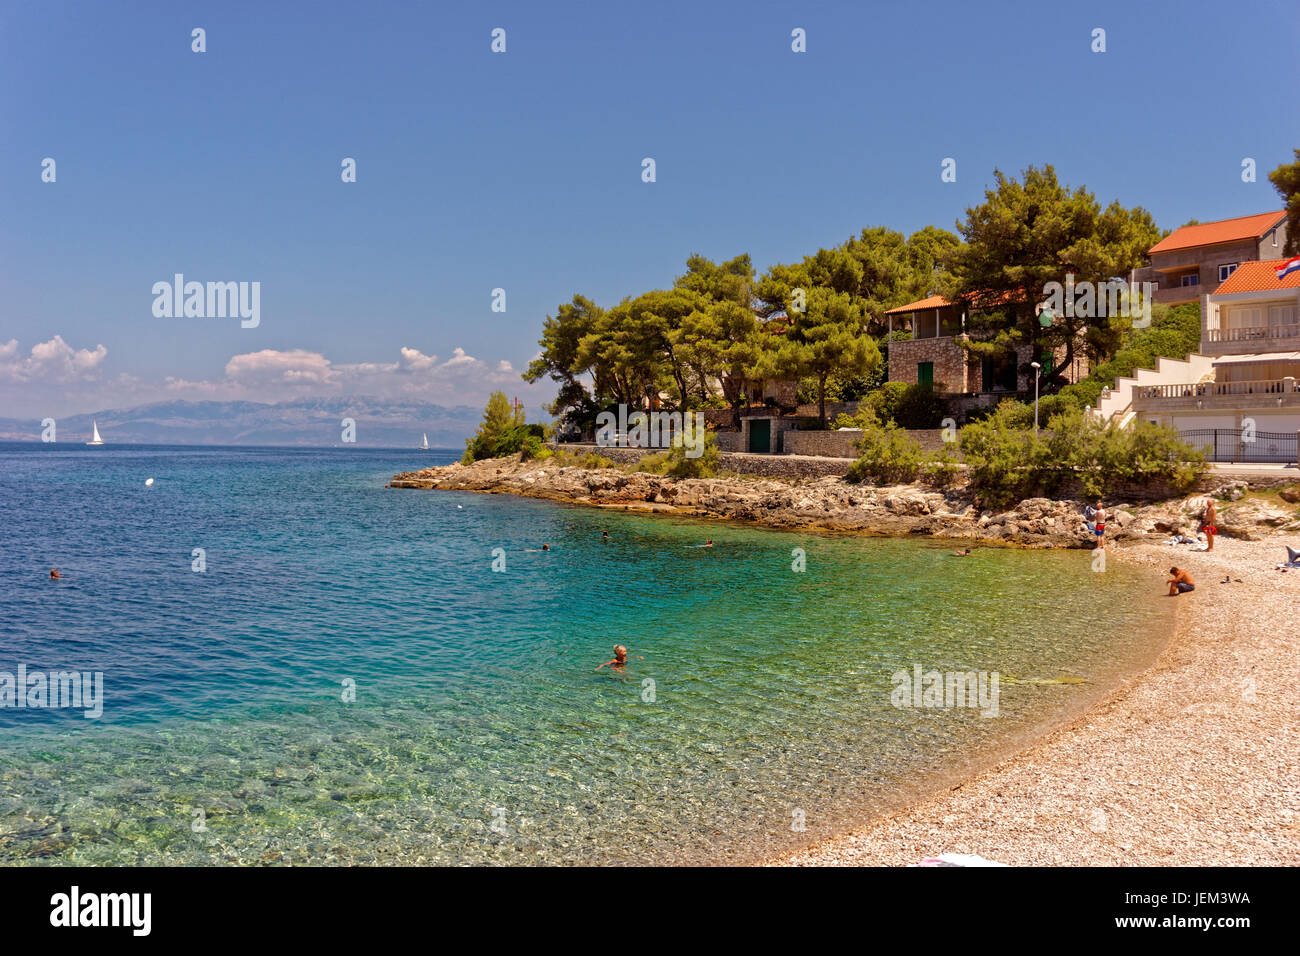 Plage de Ste Maxime sur l'île de Solta adriatique en Croatie. Banque D'Images